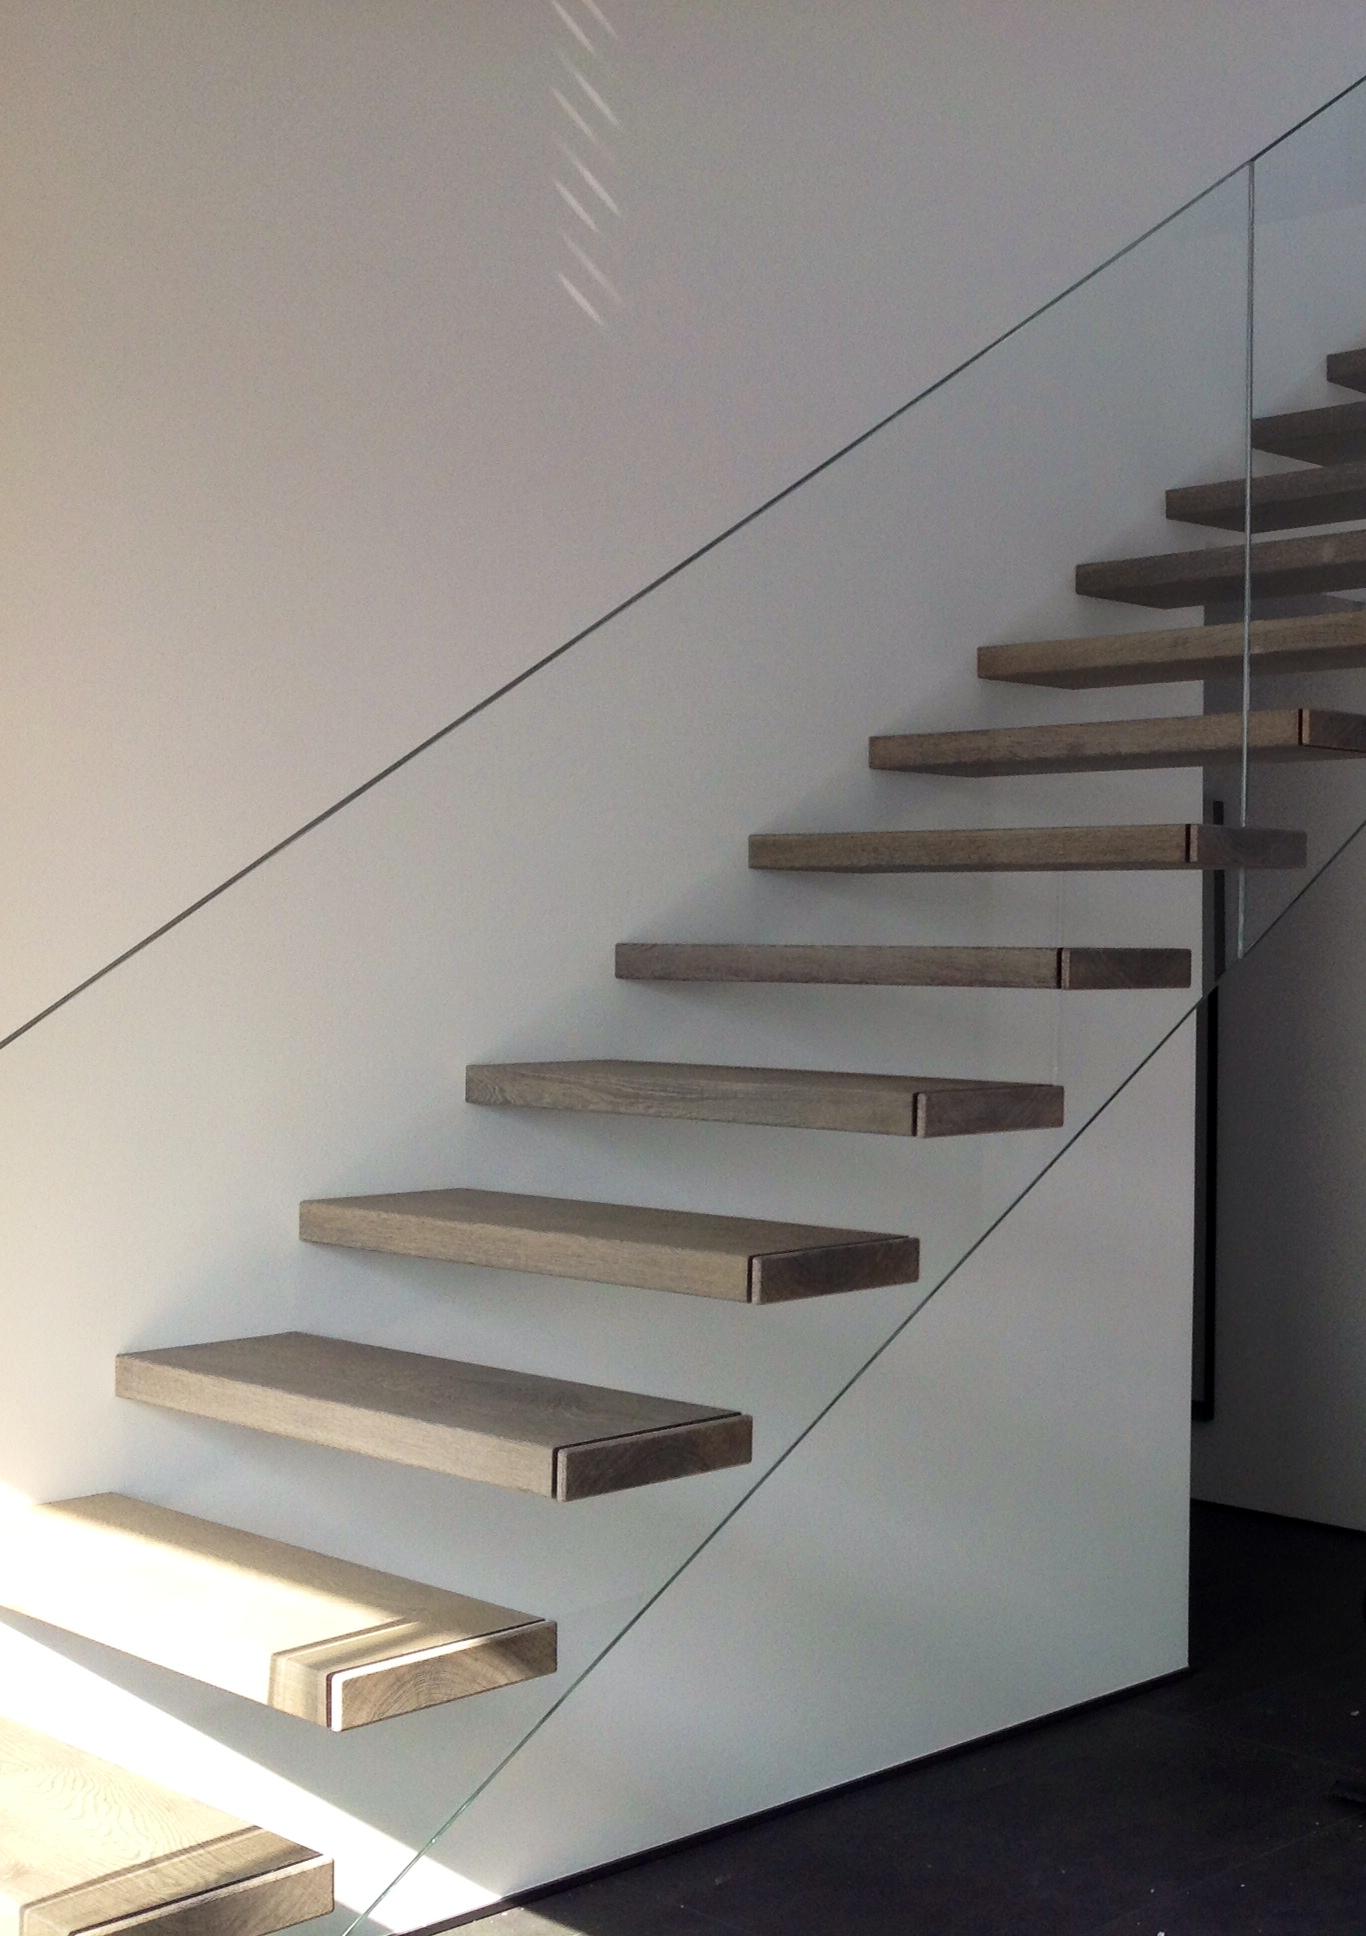 Treppe #freischwebendetreppe ©Raumausstattung Schneider e.K.